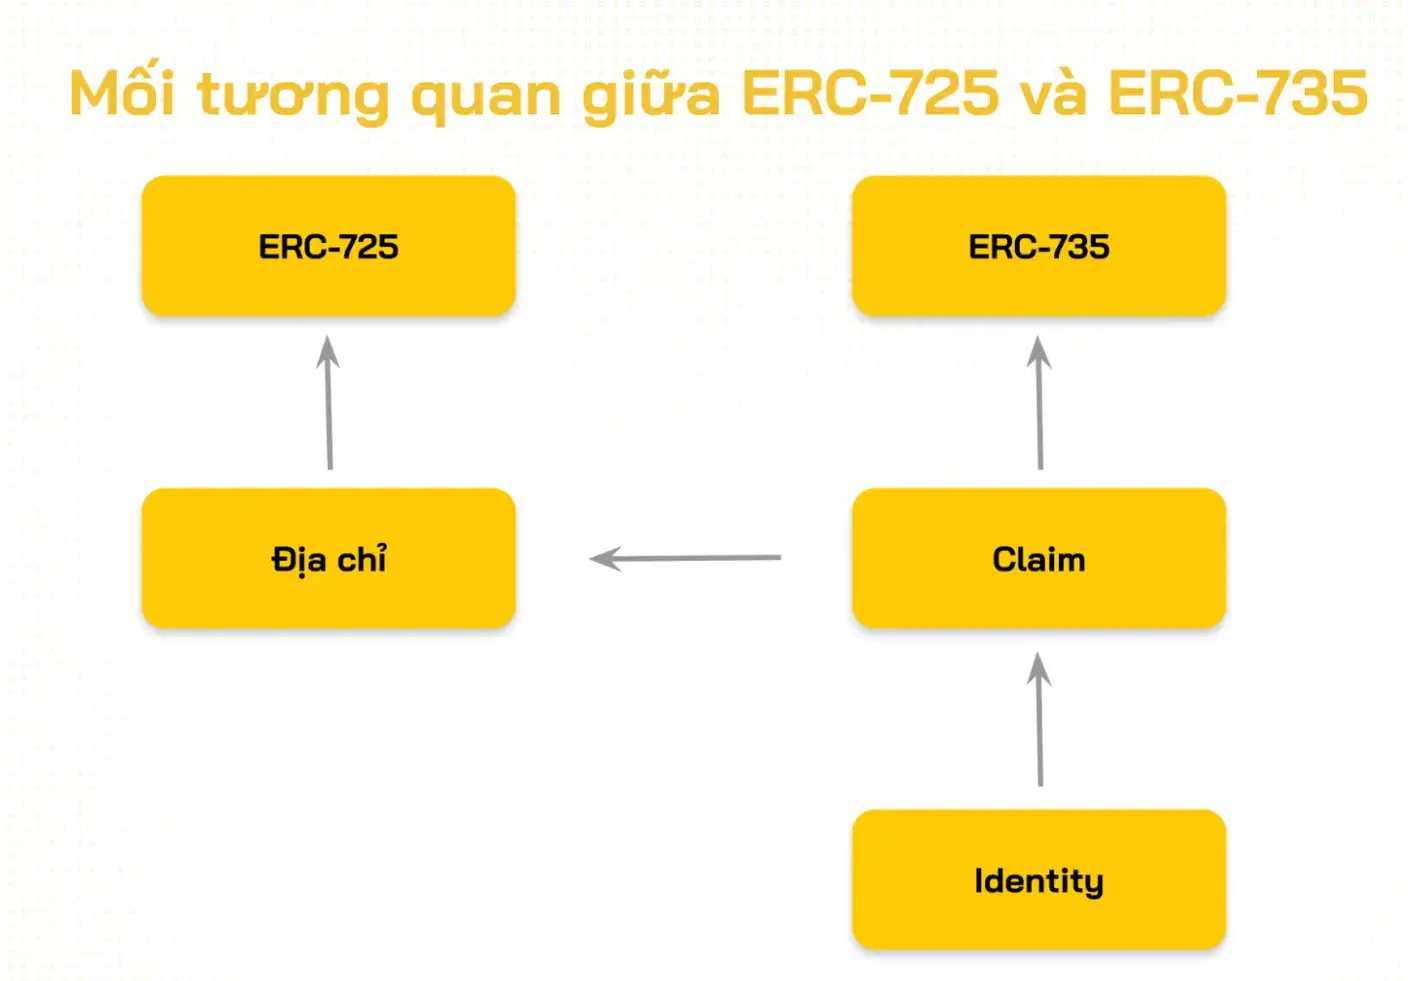 ERC-735 là gì? ERC-725 là gì? Tiêu chuẩn phục vụ Identity